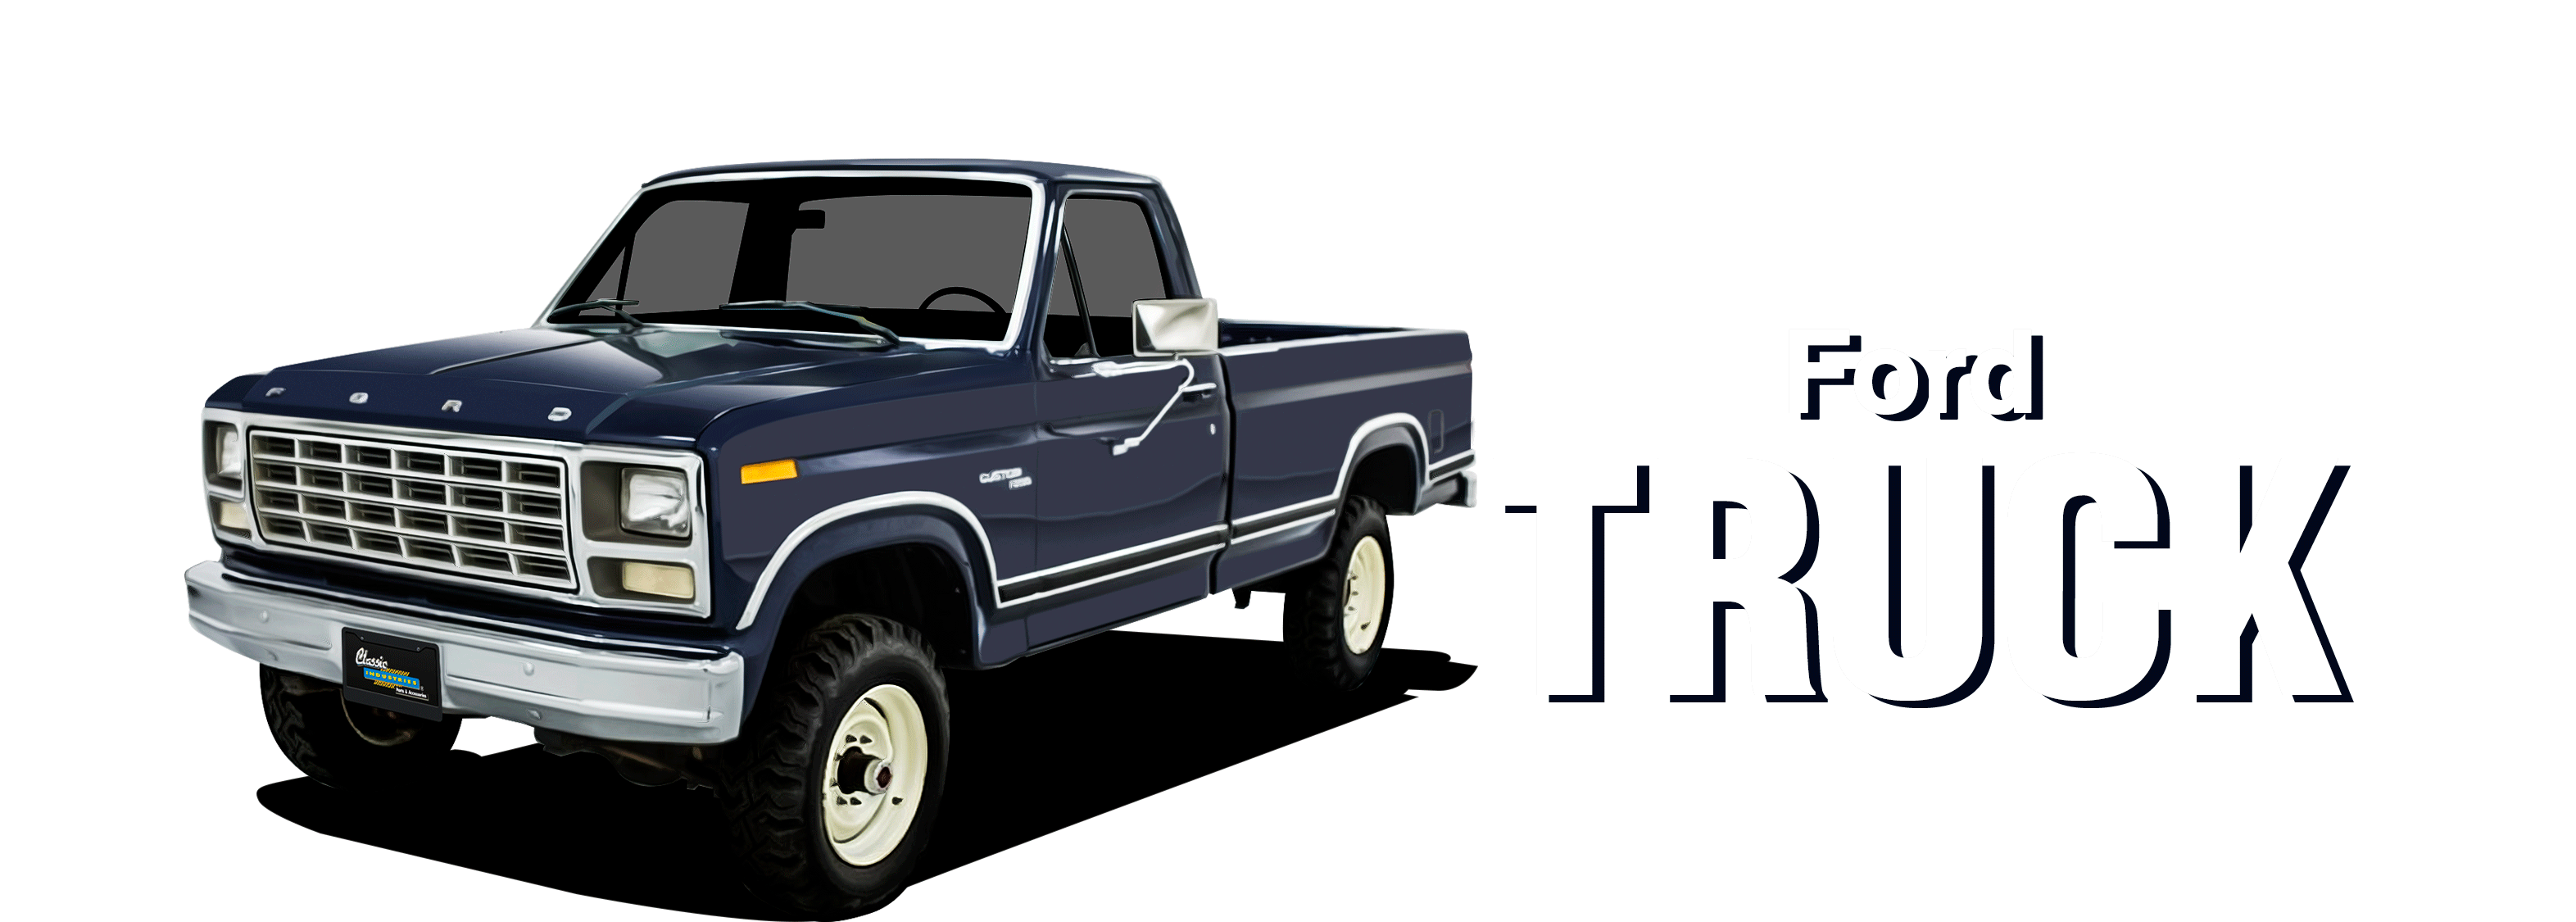 67-72FordTruck-vehicle-desktop_V3